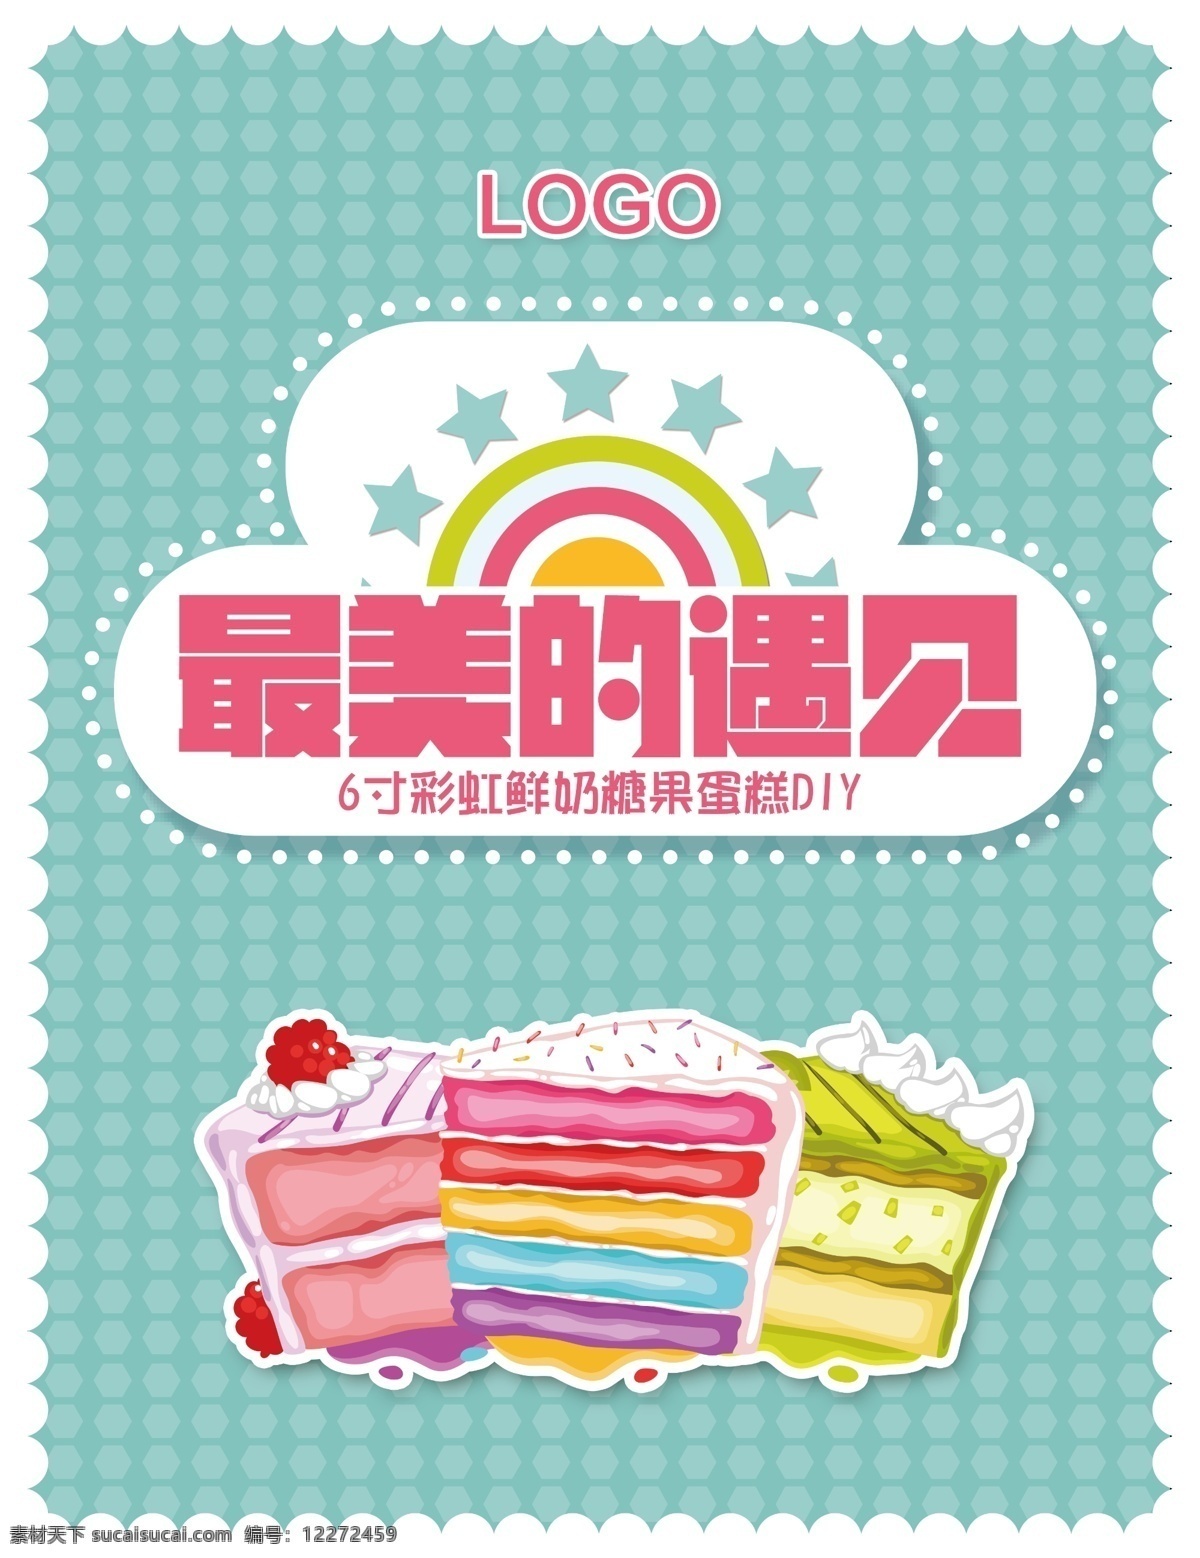 彩虹 蛋糕 diy 彩虹蛋糕 点心 甜点 logo 最美的遇见 白色